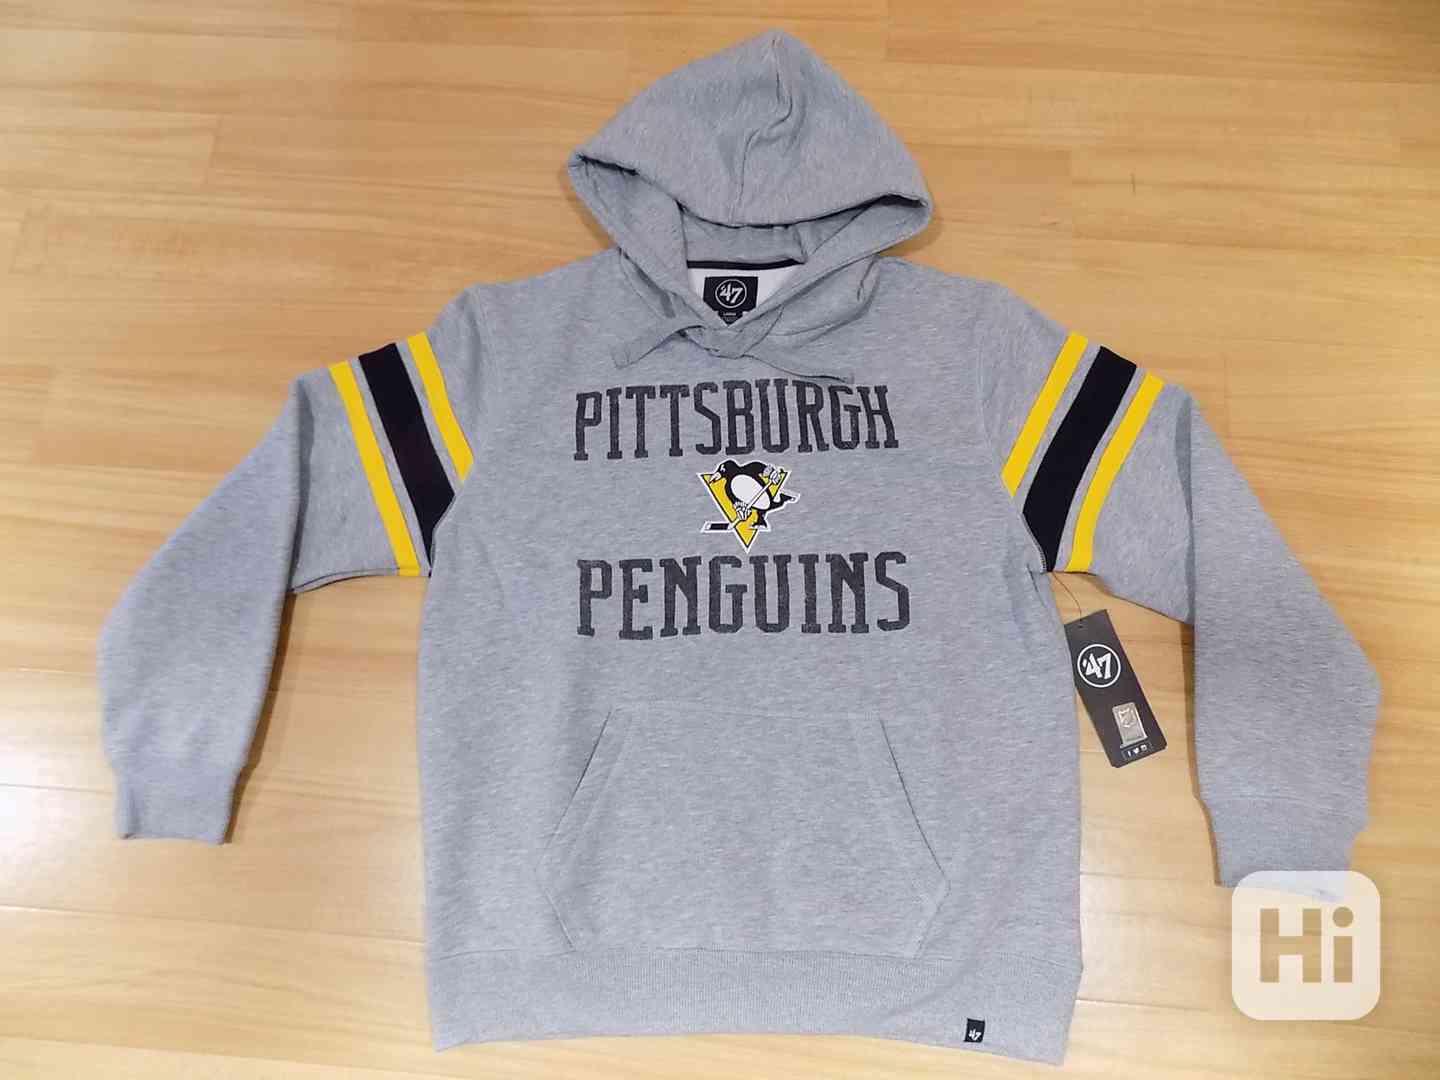 Hokejová mikina NHL - Pittsburgh Penguins (velikost L) -NOVÁ - foto 1